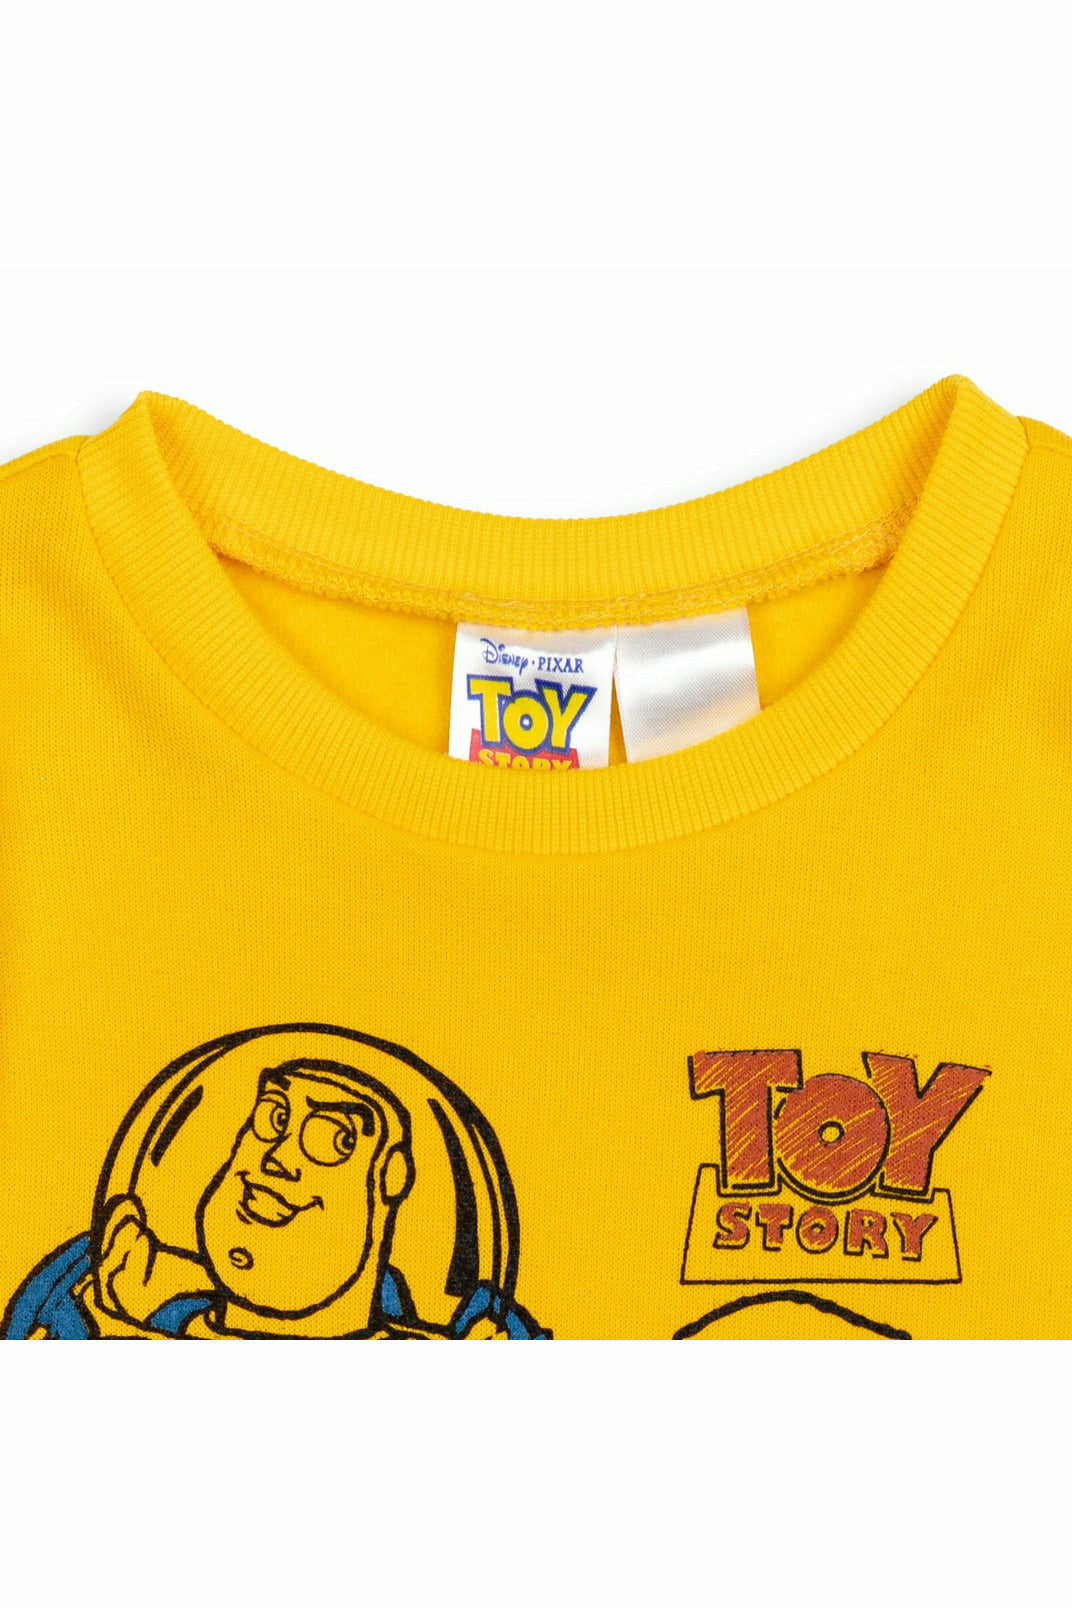 Toy Story Pixar Woody Fleece Pullover Sweatshirt